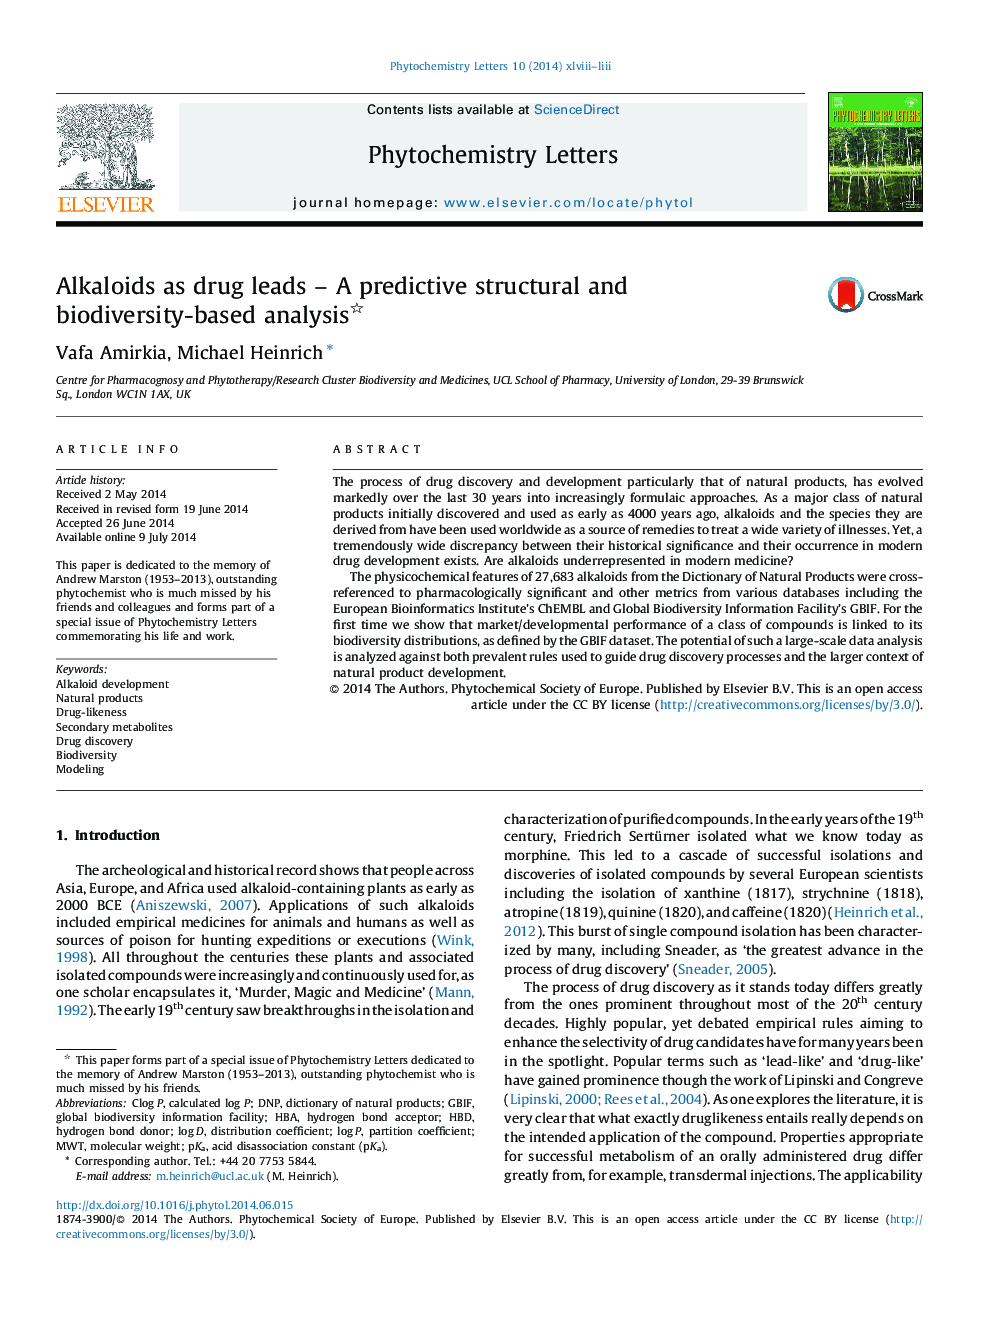 آلکالوئیدها به عنوان مواد منفجره - تجزیه و تحلیل مبتنی بر پیش بینی ساختاری و تنوع زیستی 